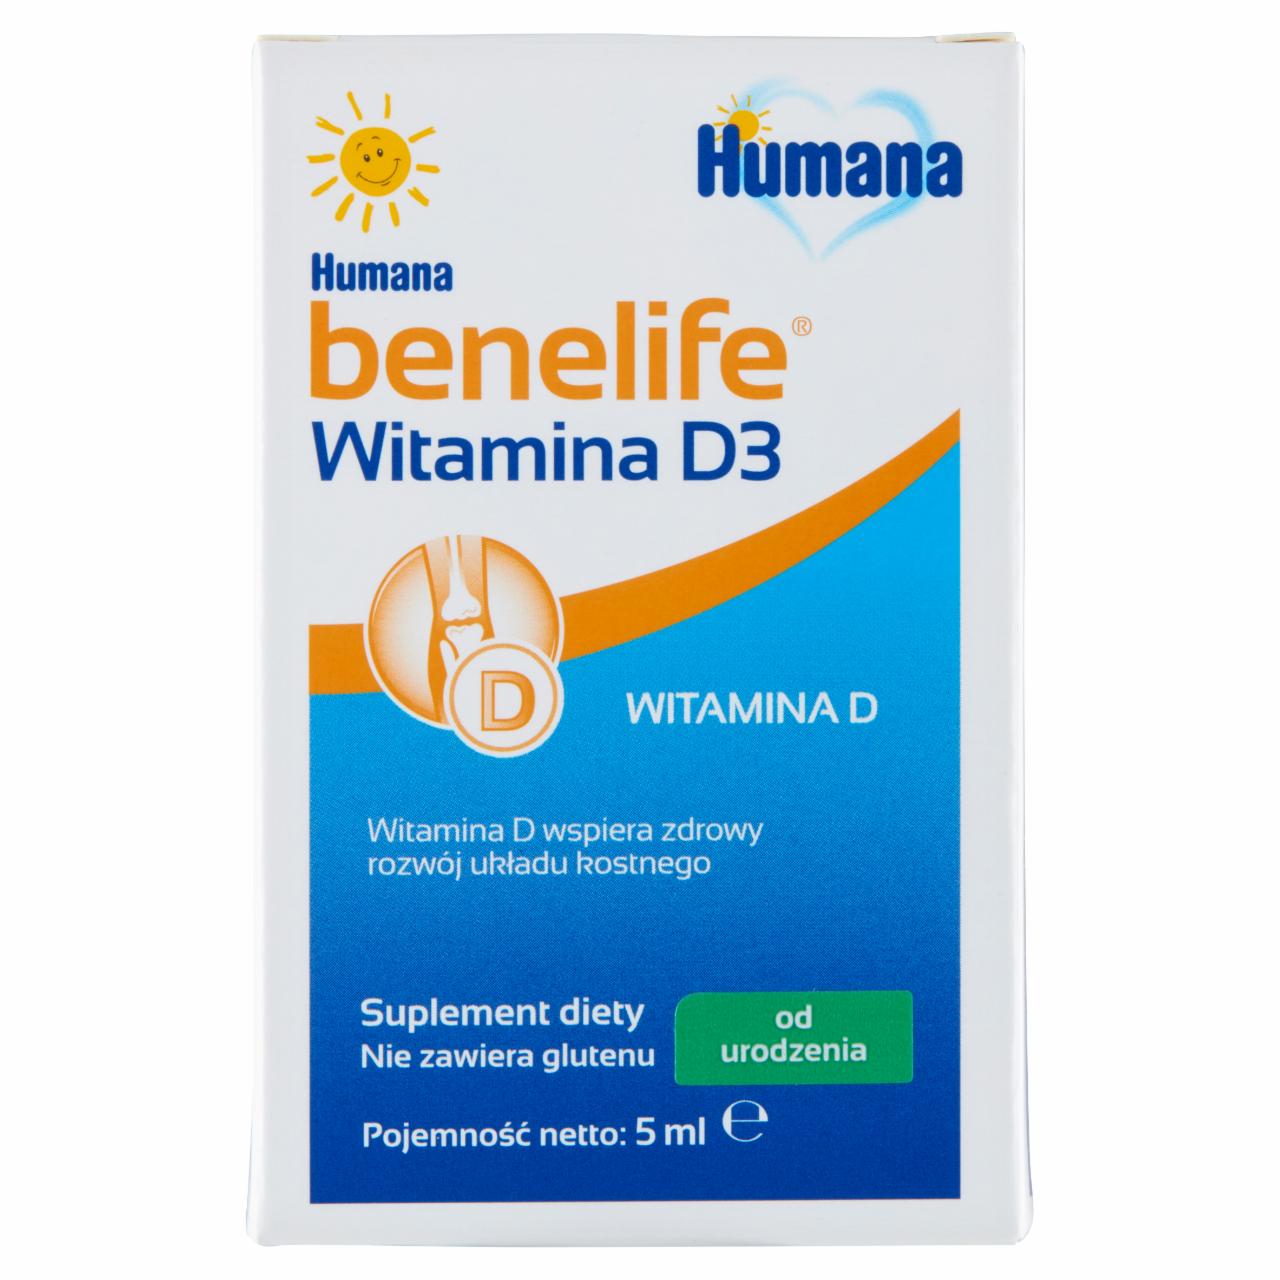 Zdjęcia - Humana benelife Suplement diety witamina D3 od urodzenia 5 ml